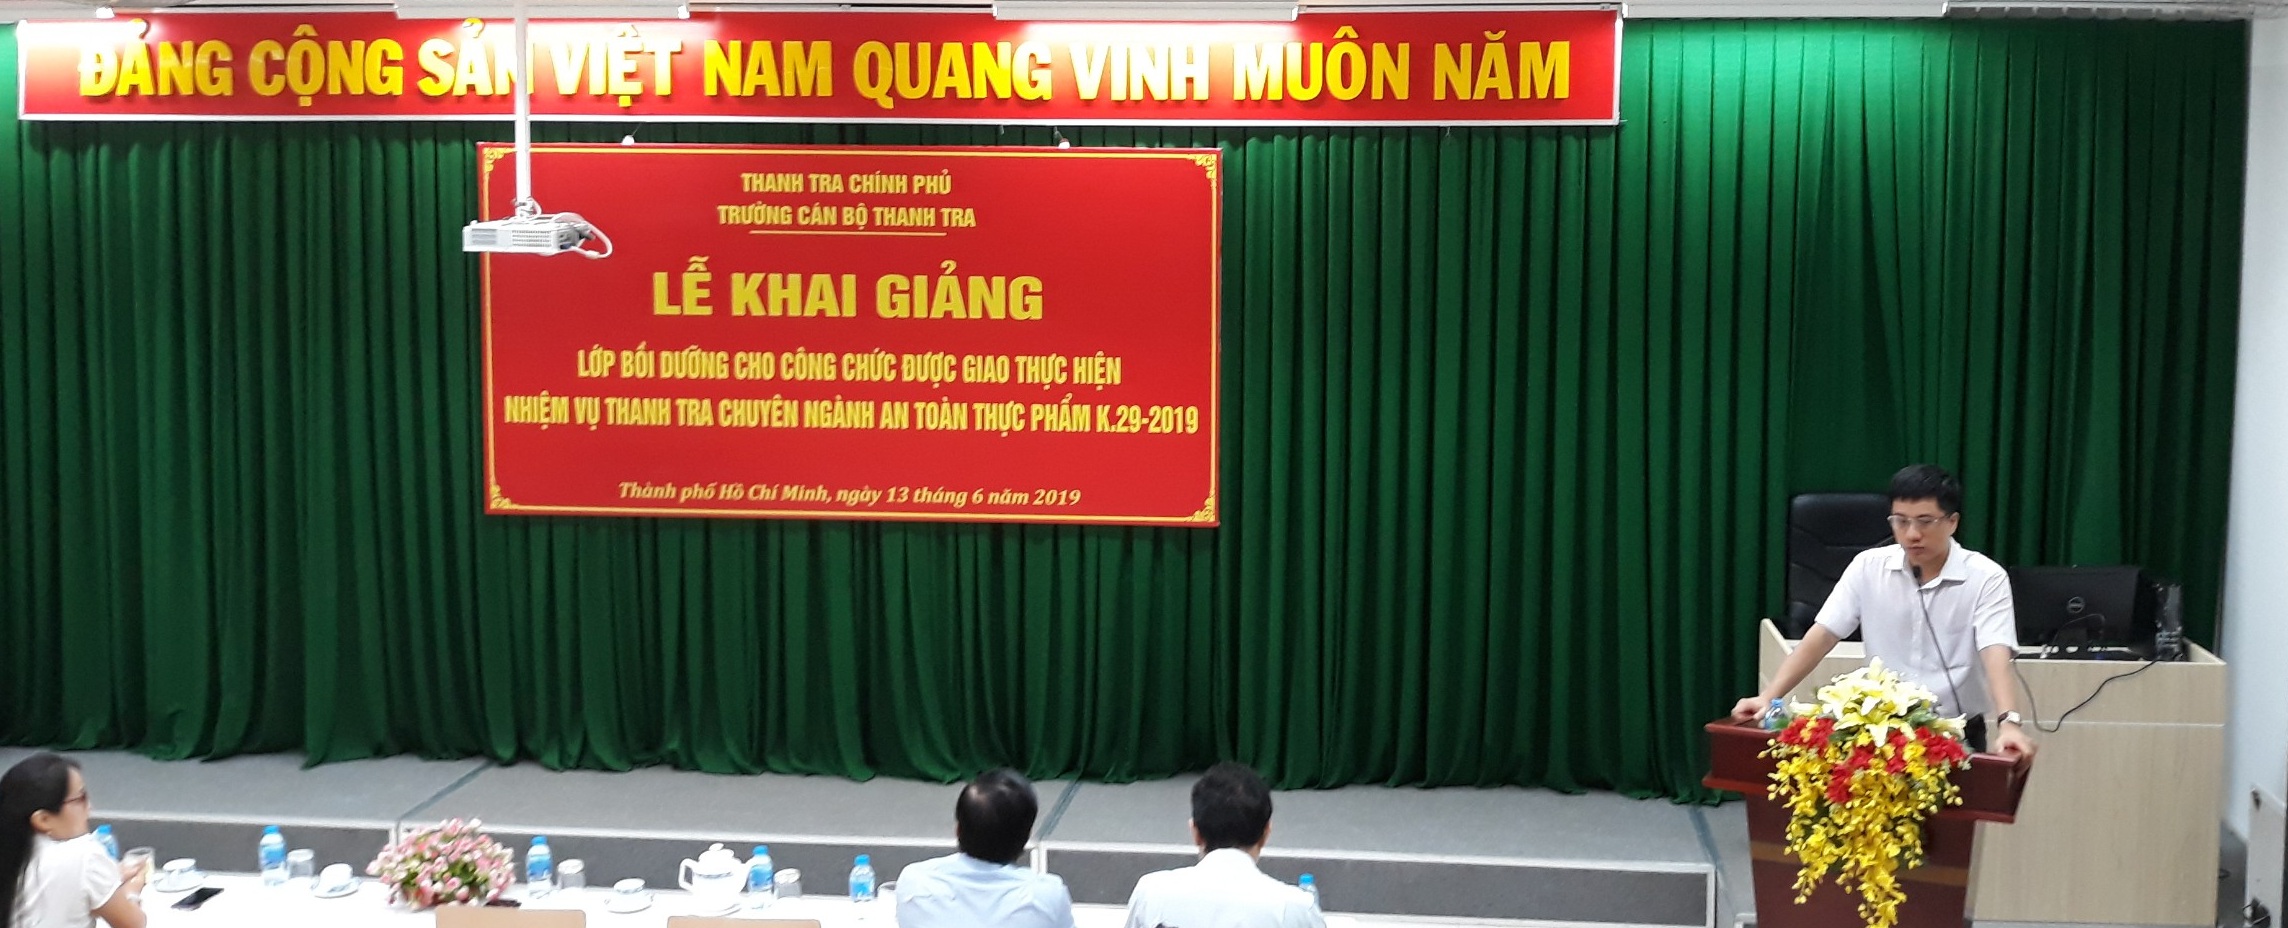 TS Trịnh Văn Toàn Phó Hiệu trưởng Trg CBTT phat biểu khai giảng khóa học vdksgjkdg